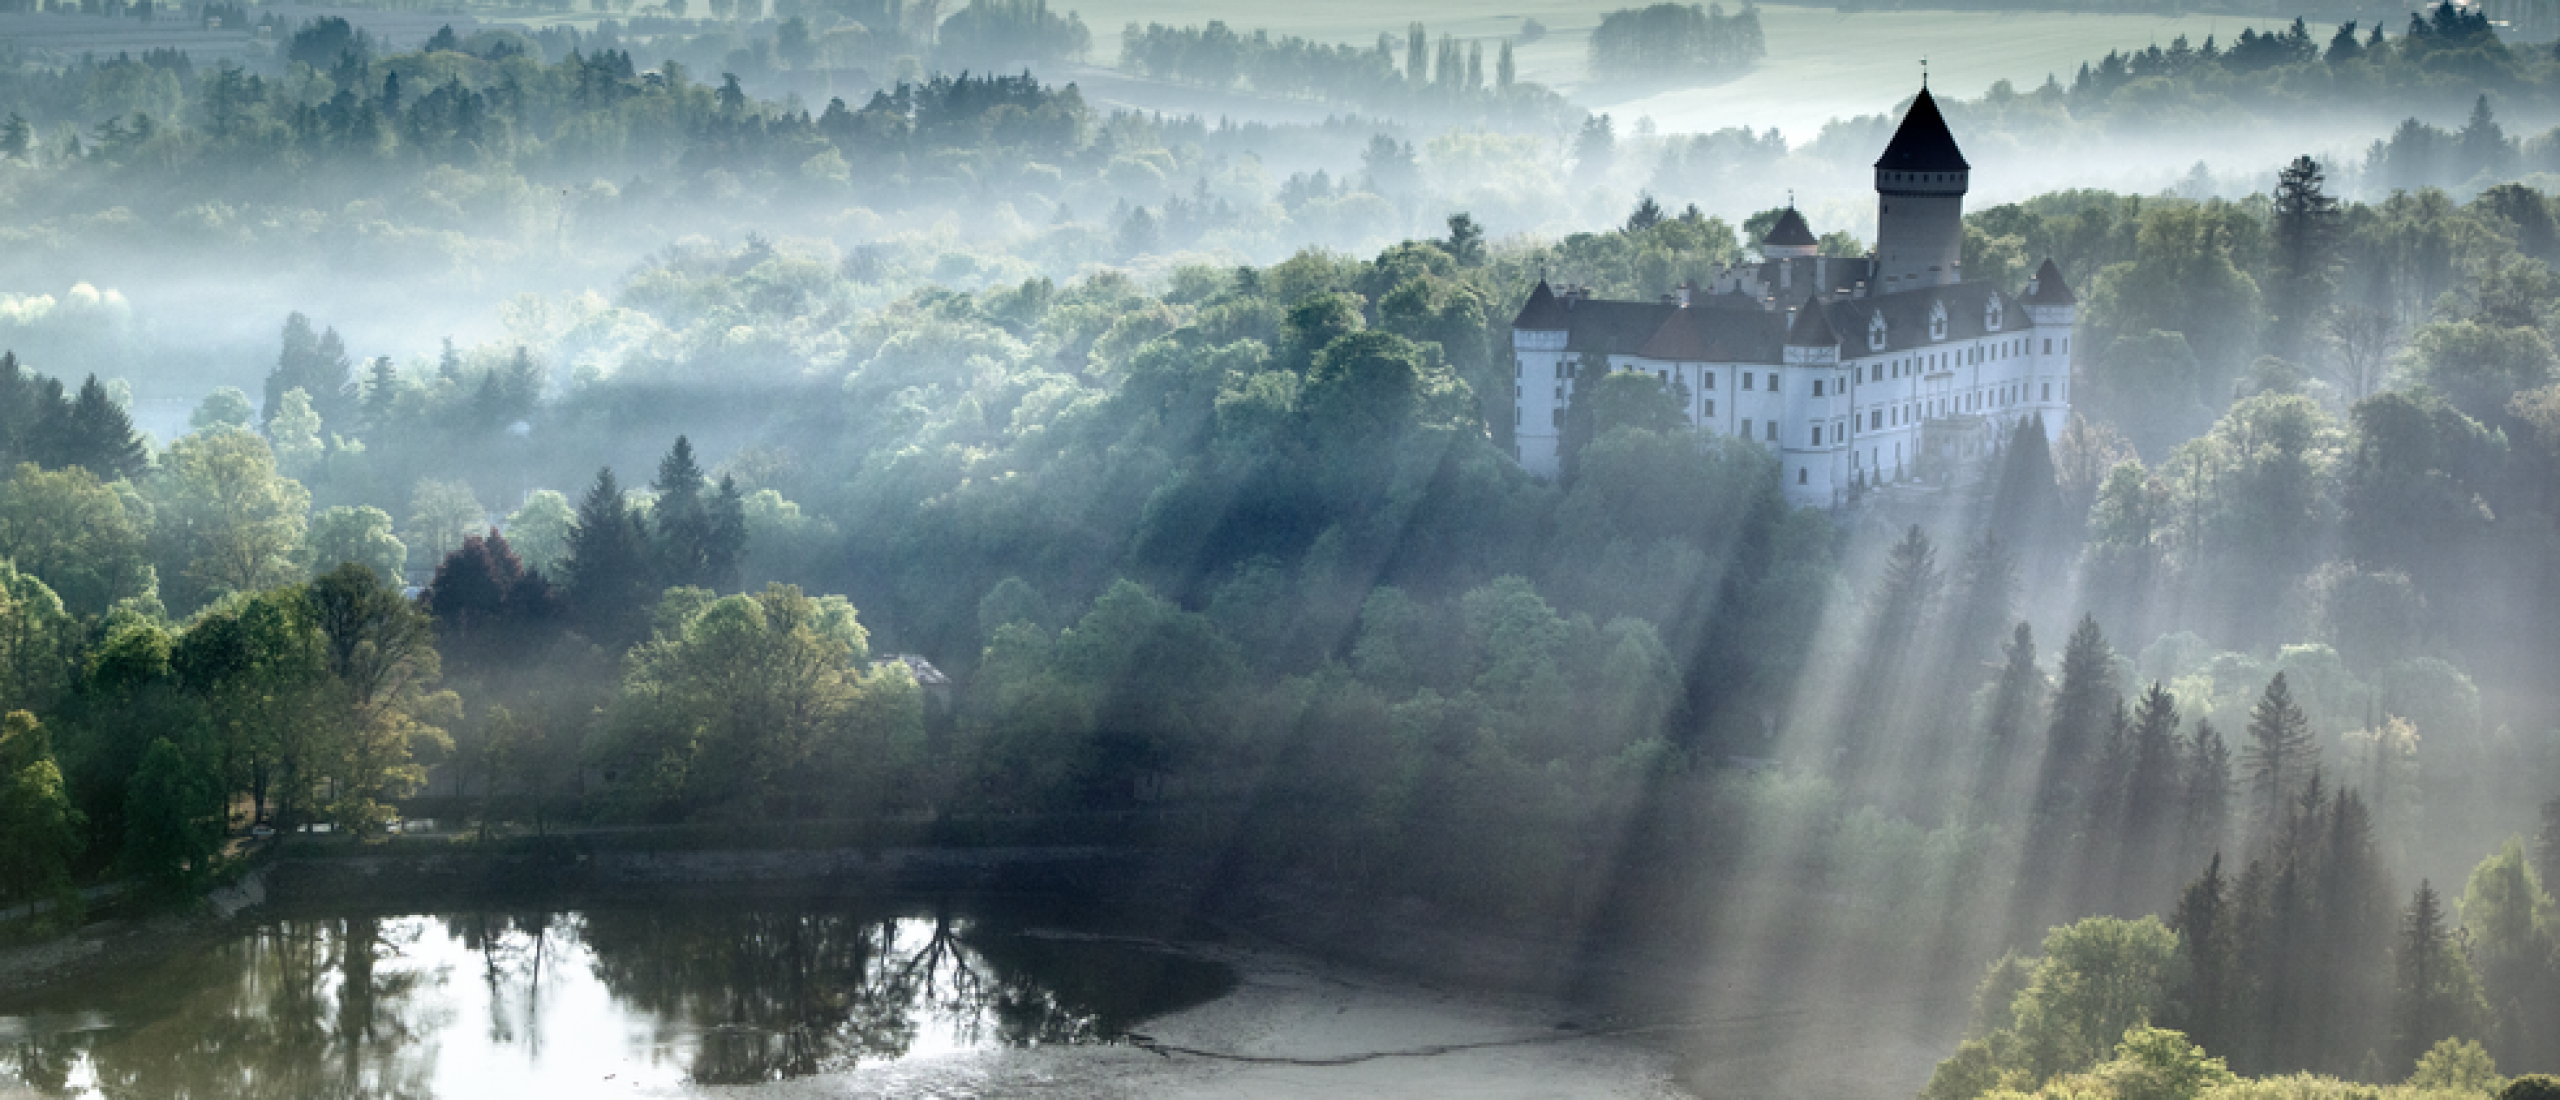 Fünf schöne Burgen in Böhmen